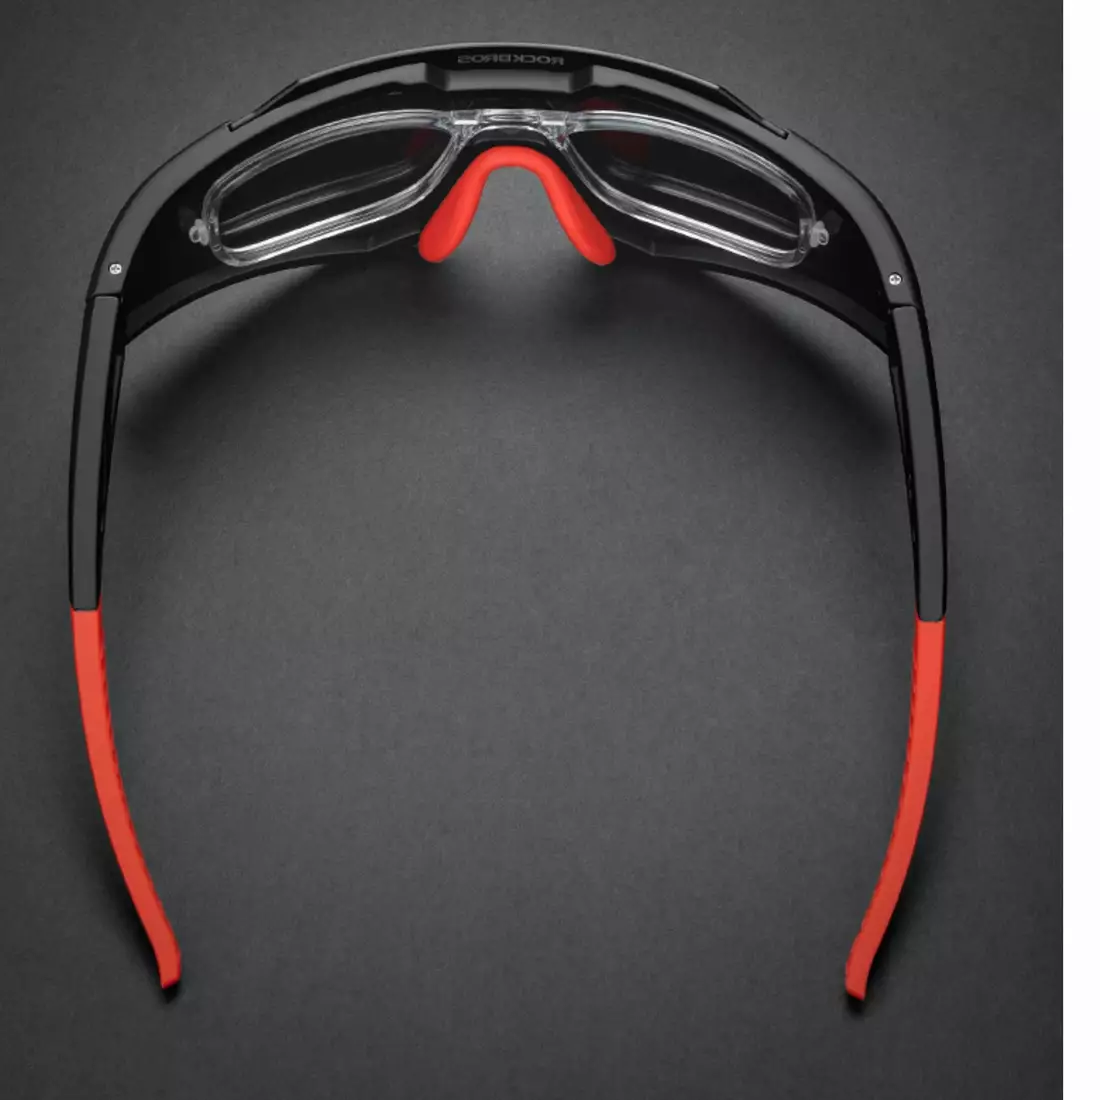 Rockbros Sportovní / Cyklistické polarizační sluneční brýle, Černé 14110006005